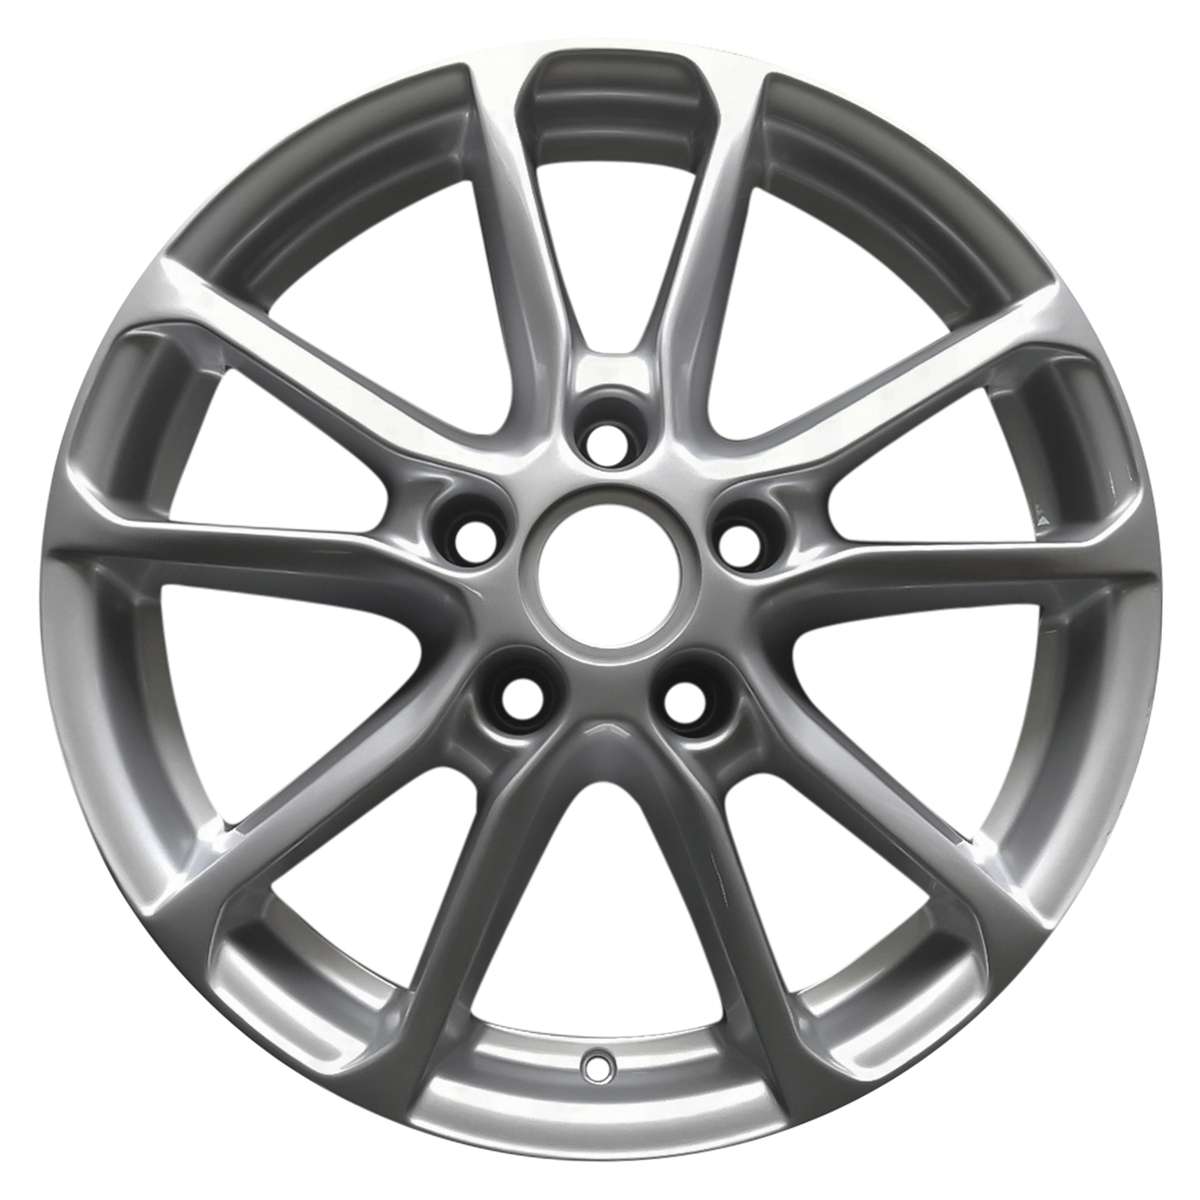 2015 Porsche Cayenne 18" OEM Wheel Rim W67480S